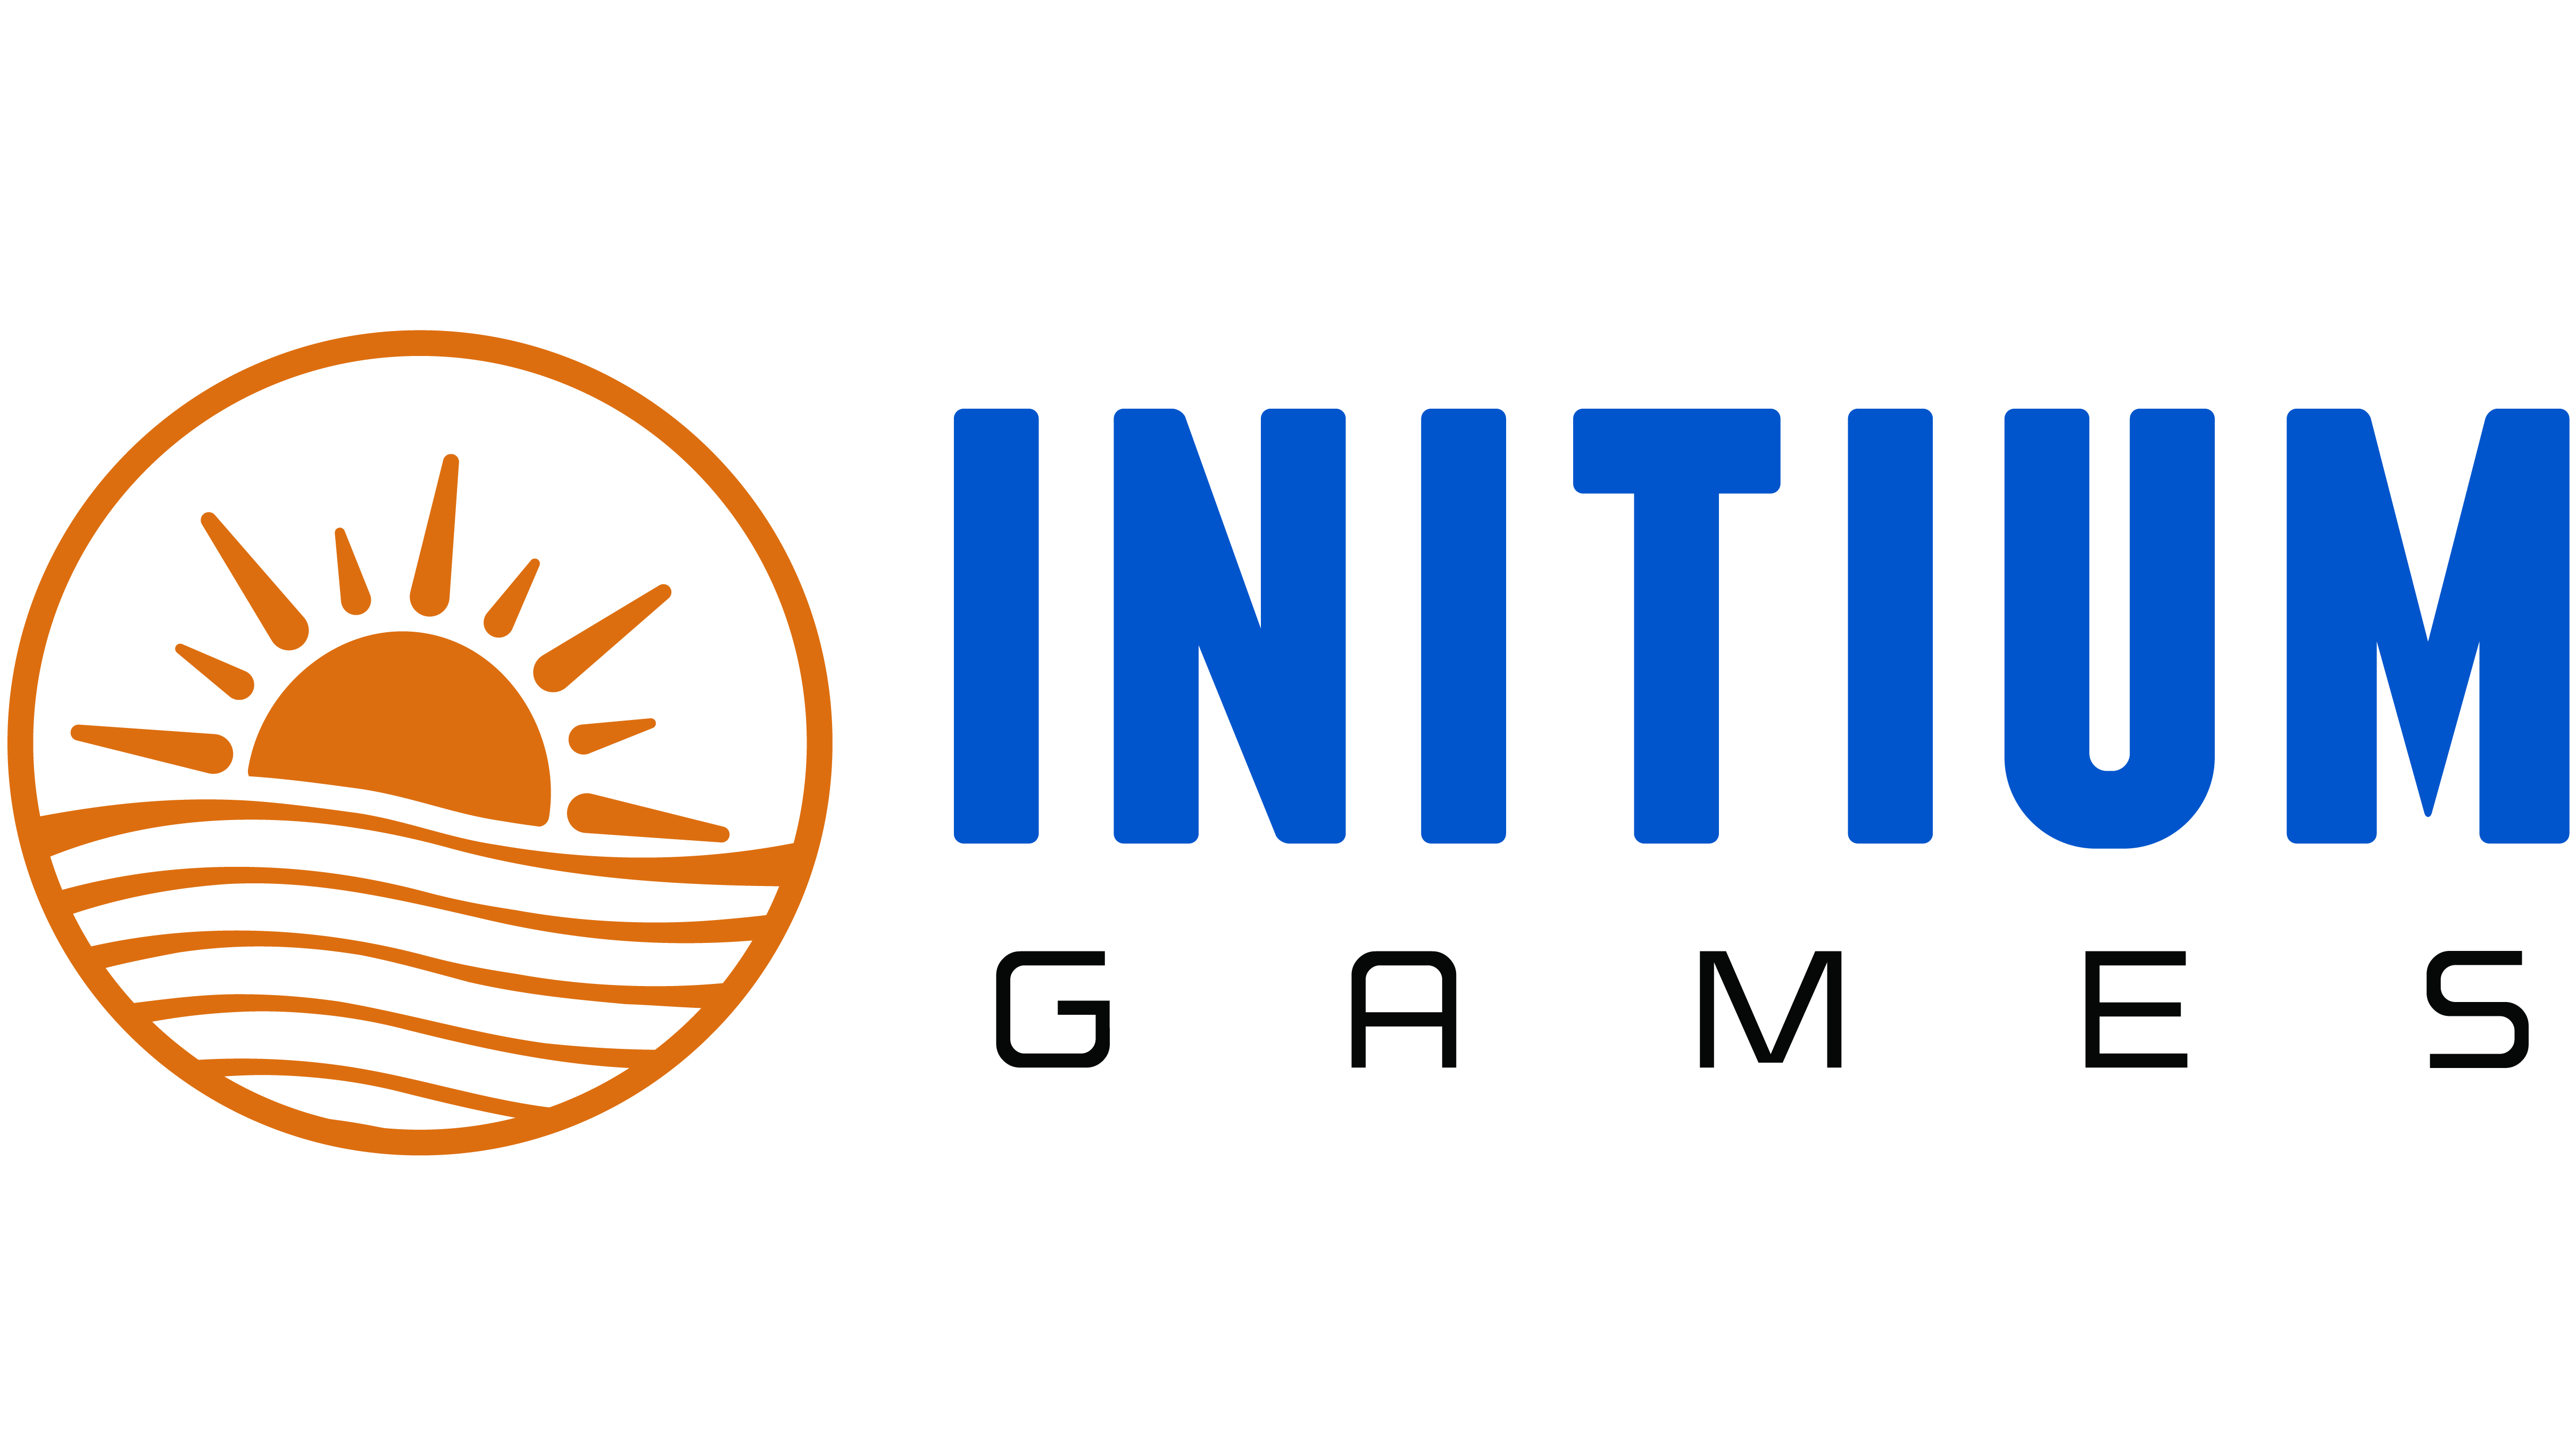 Initium Games Logo